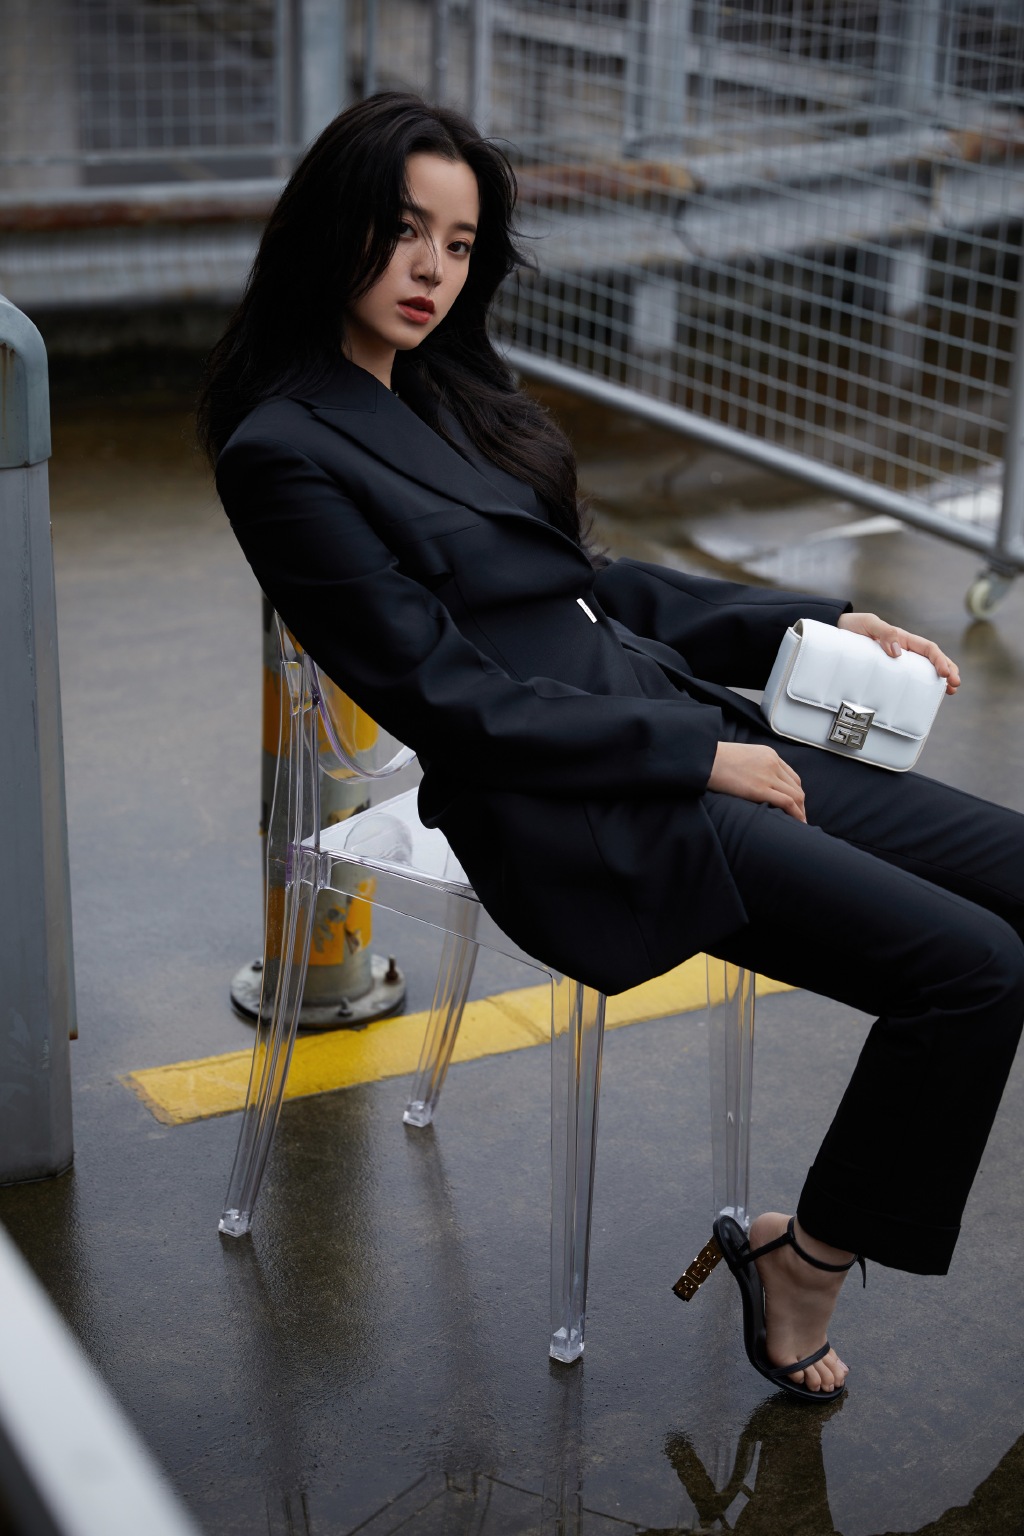 欧阳娜娜全黑西服套装着身化身酷女孩天台停车场写真靓照图片